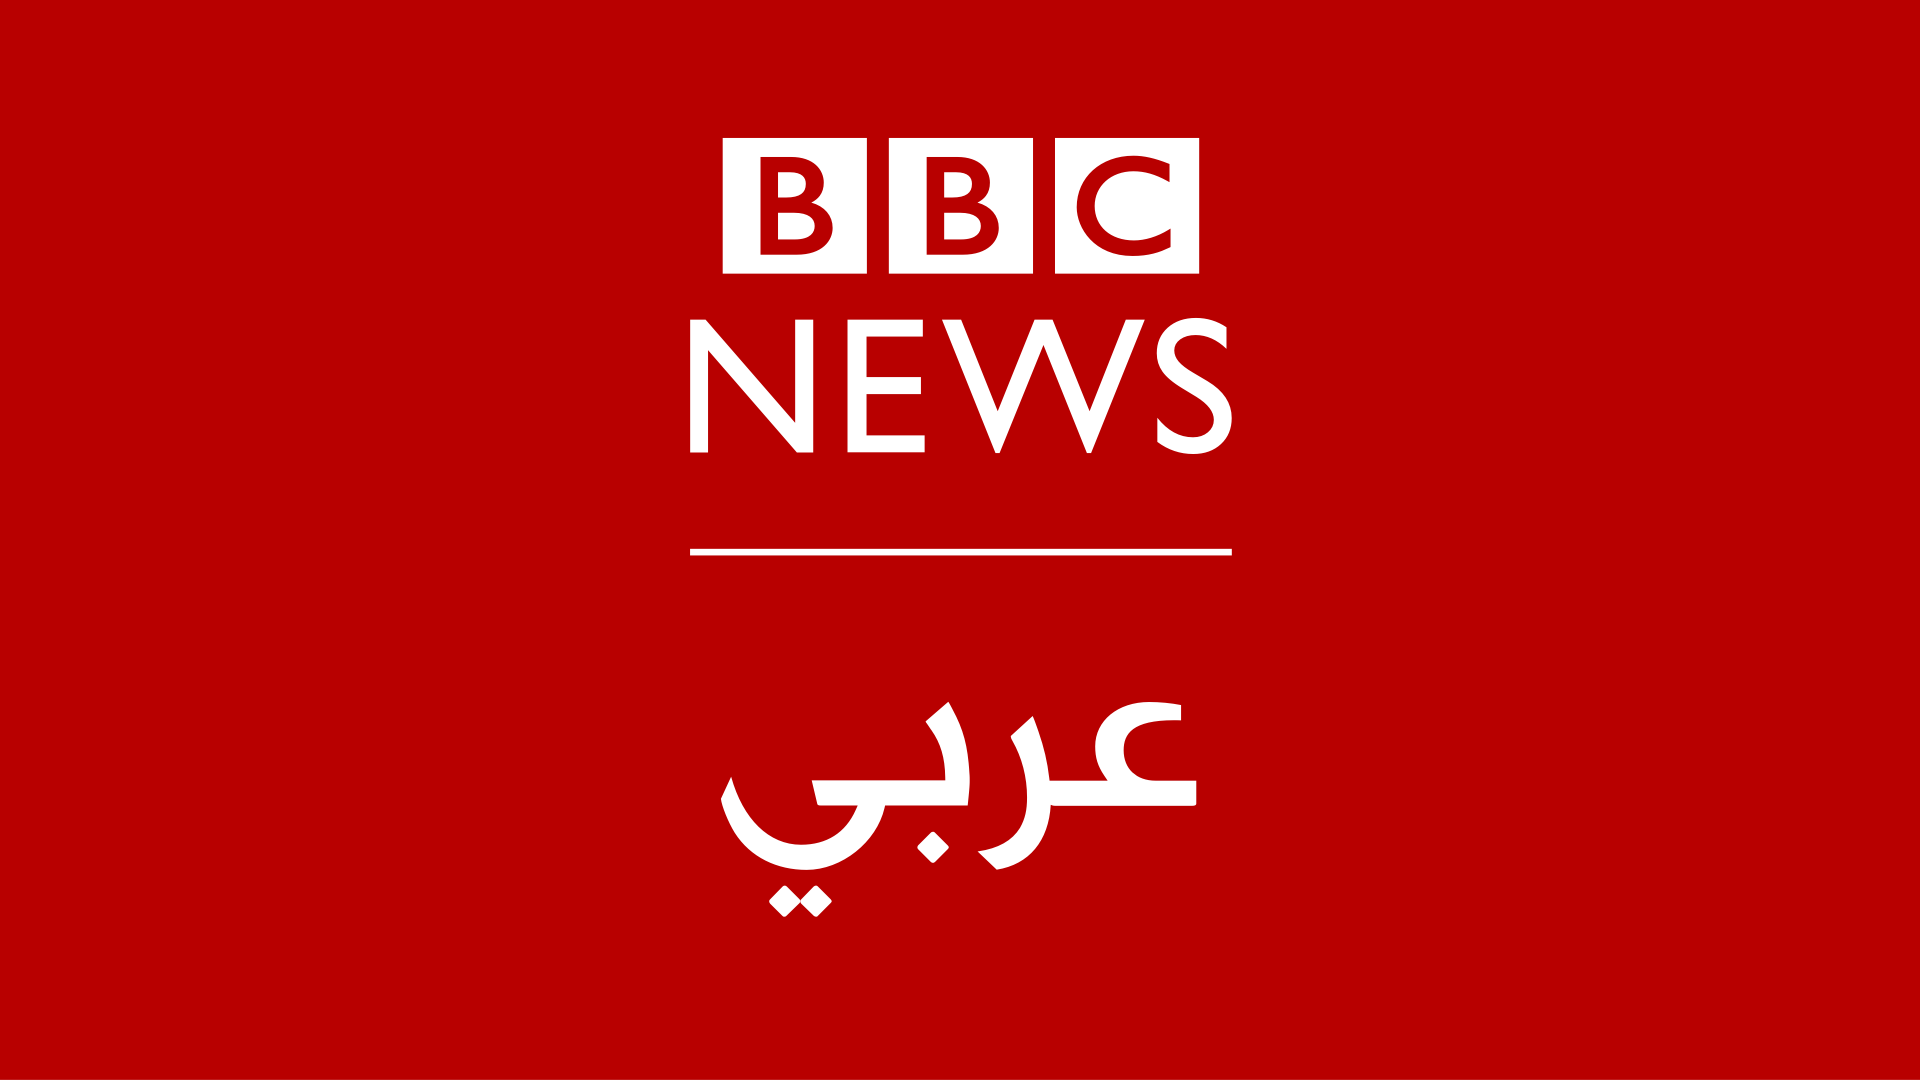 شبکه خبری عربی